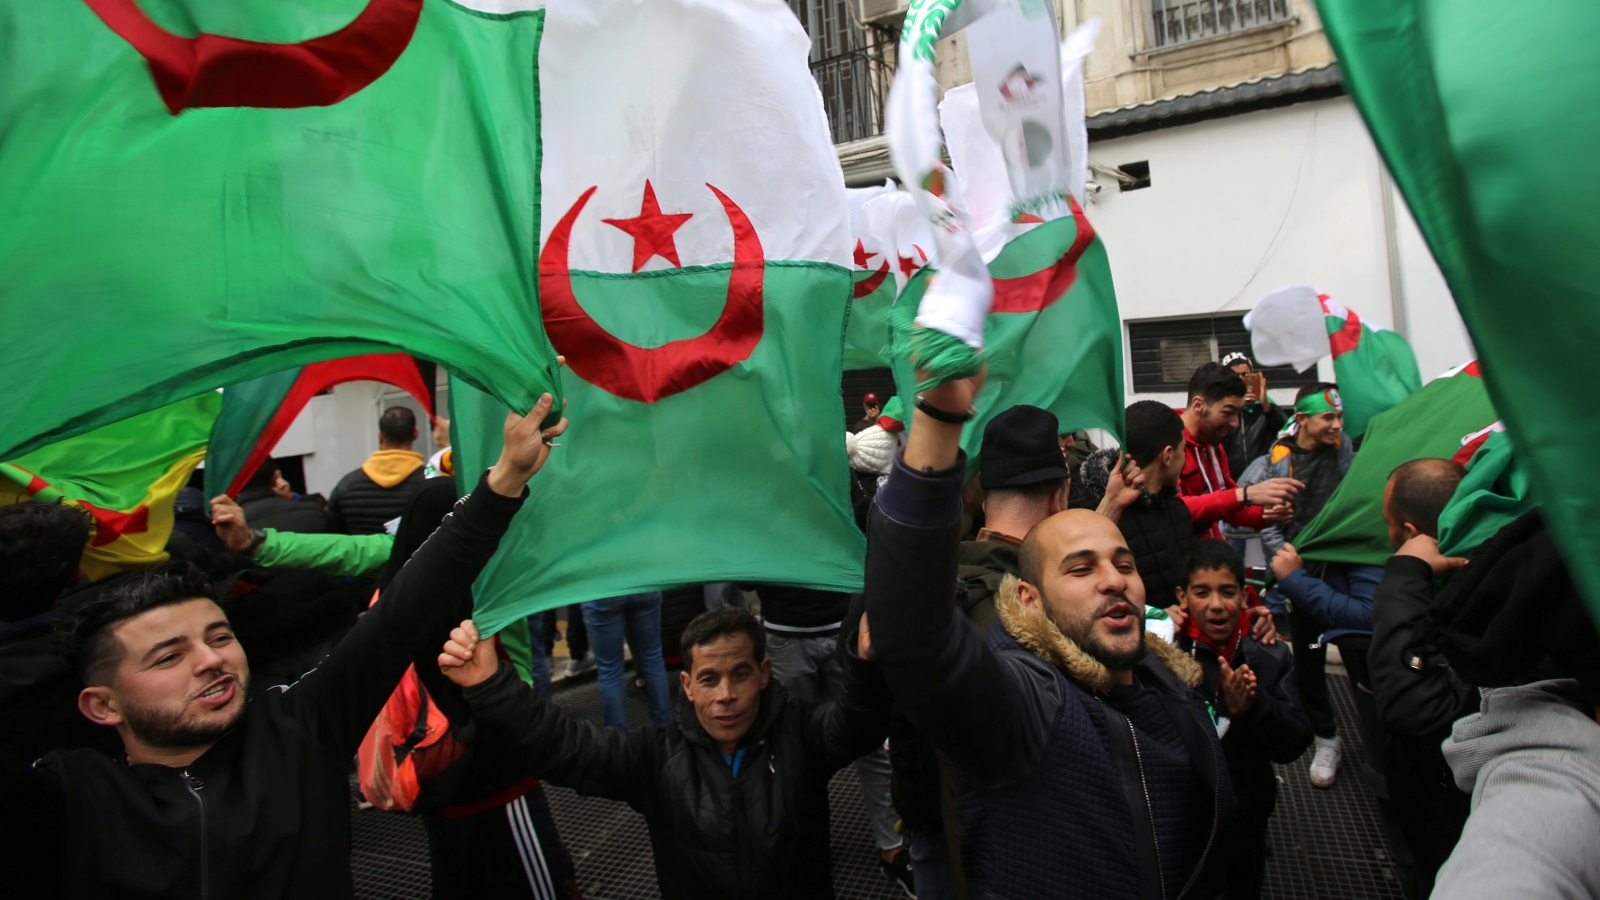 الحل في الدستور أو من دونه؟ هنا يحتد النقاش بين الجزائريين (رويترز)